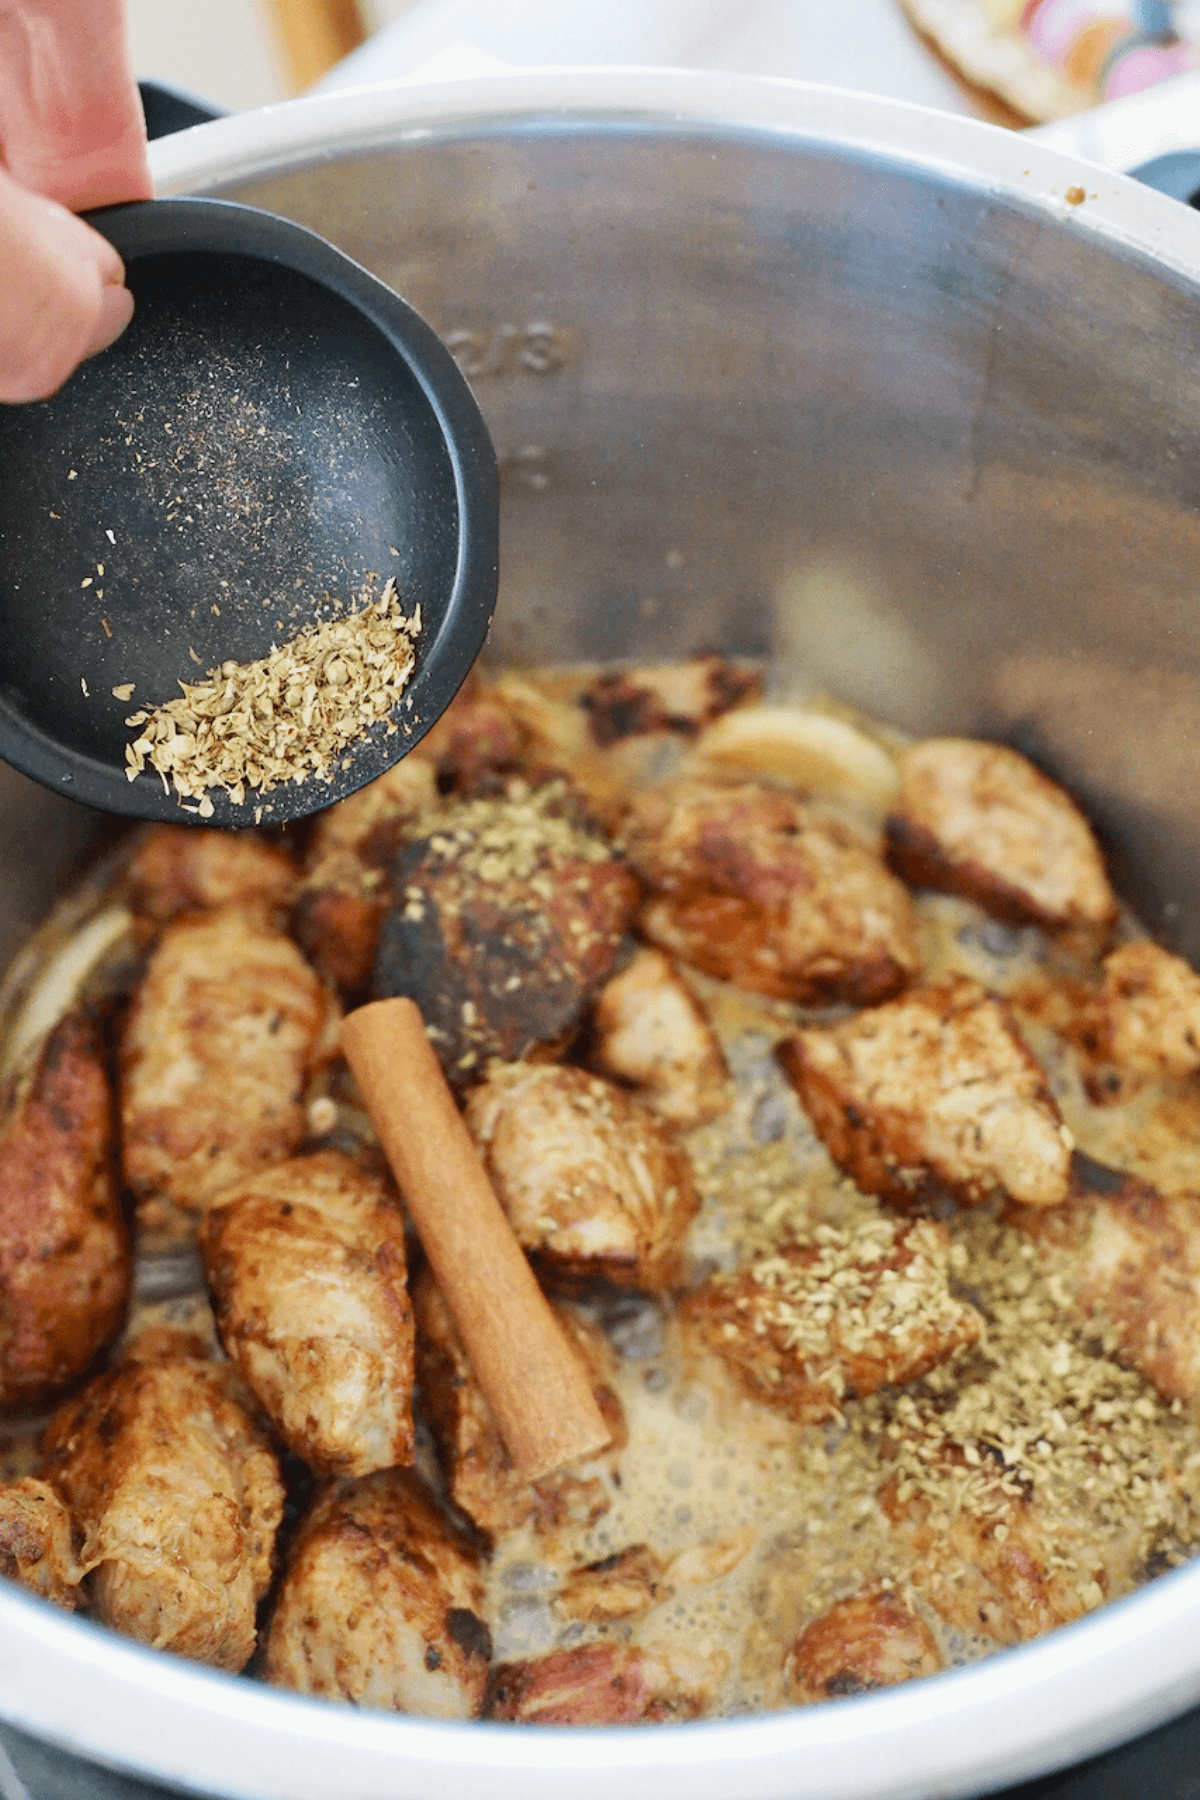 Add dried oregano and cinnamon stick to instant pot. 